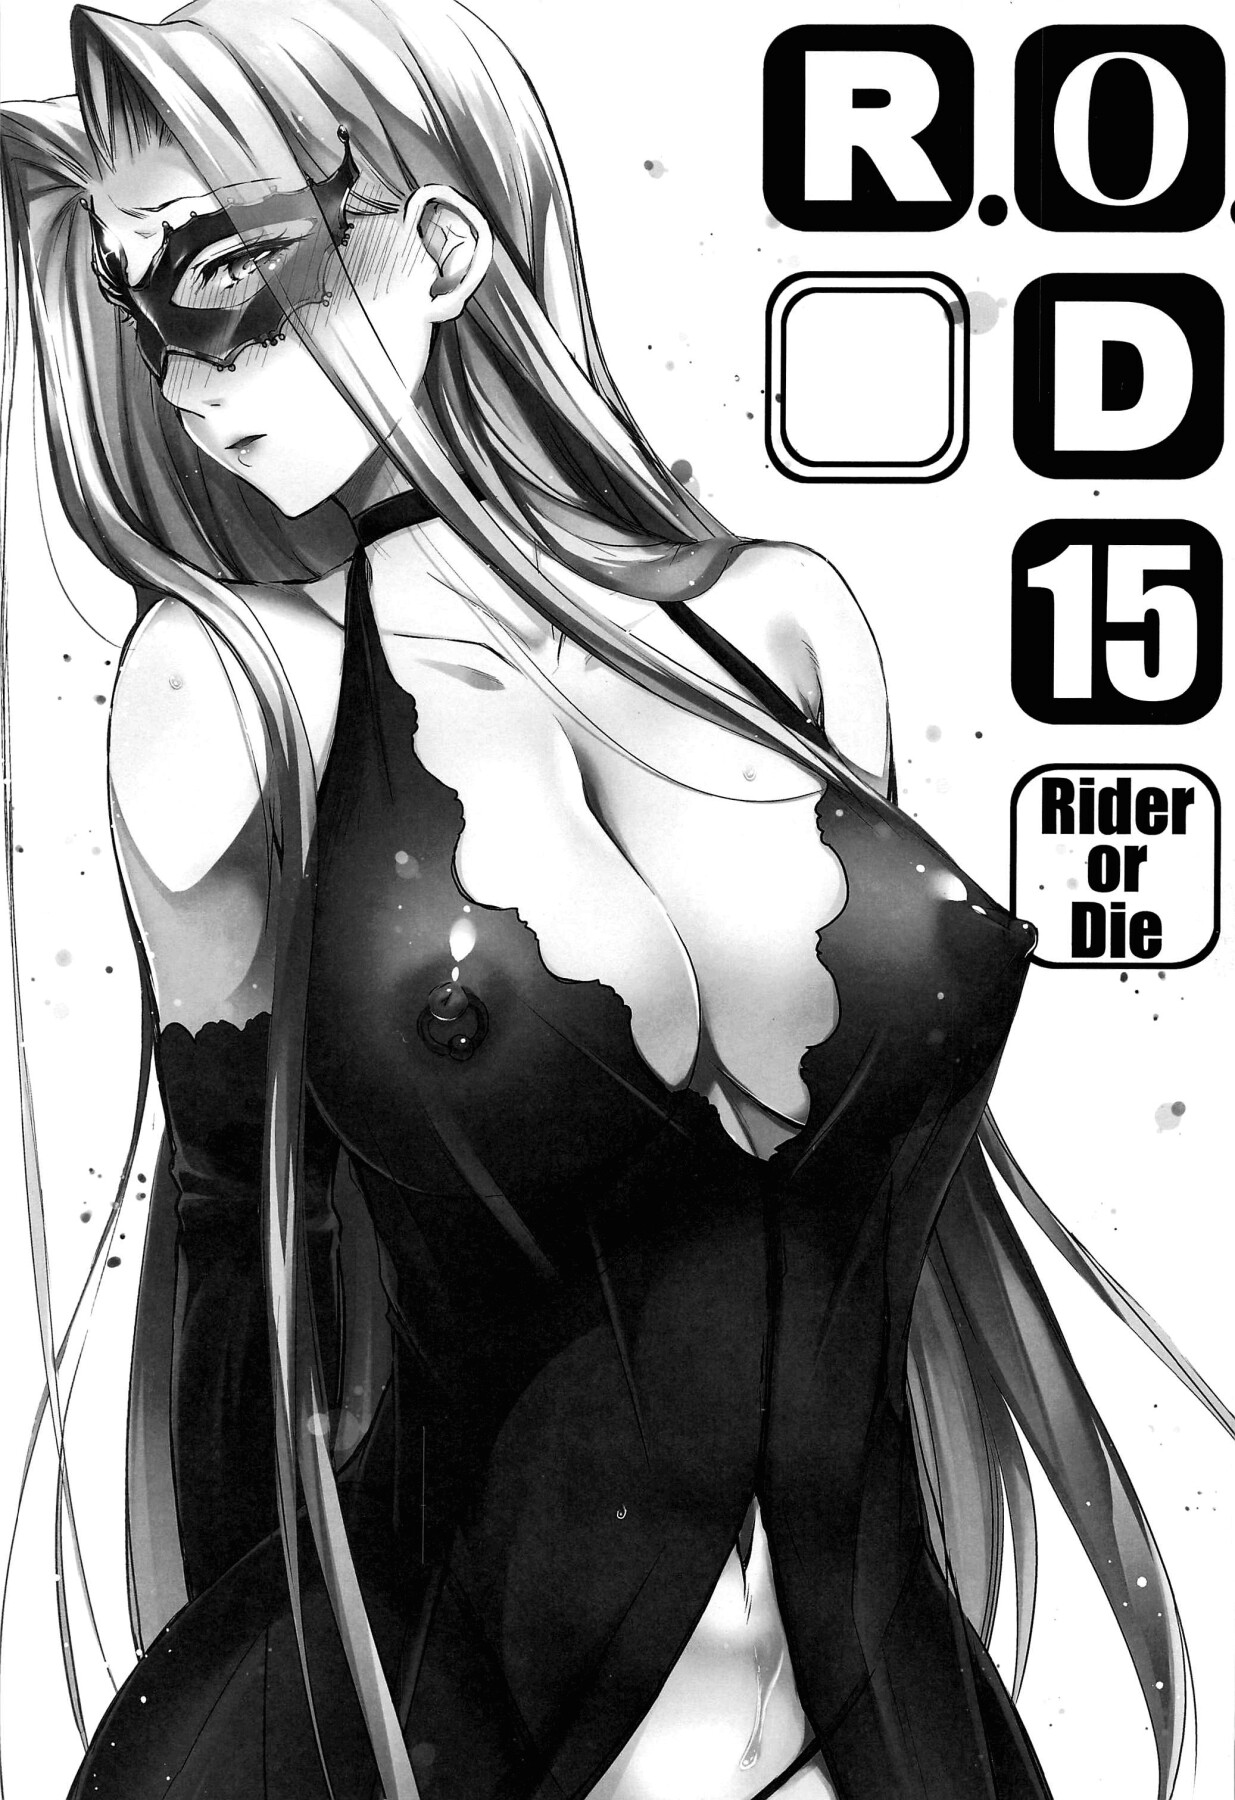 Hentai Manga Comic-R.O.D 15 -Rider or Die--Read-2